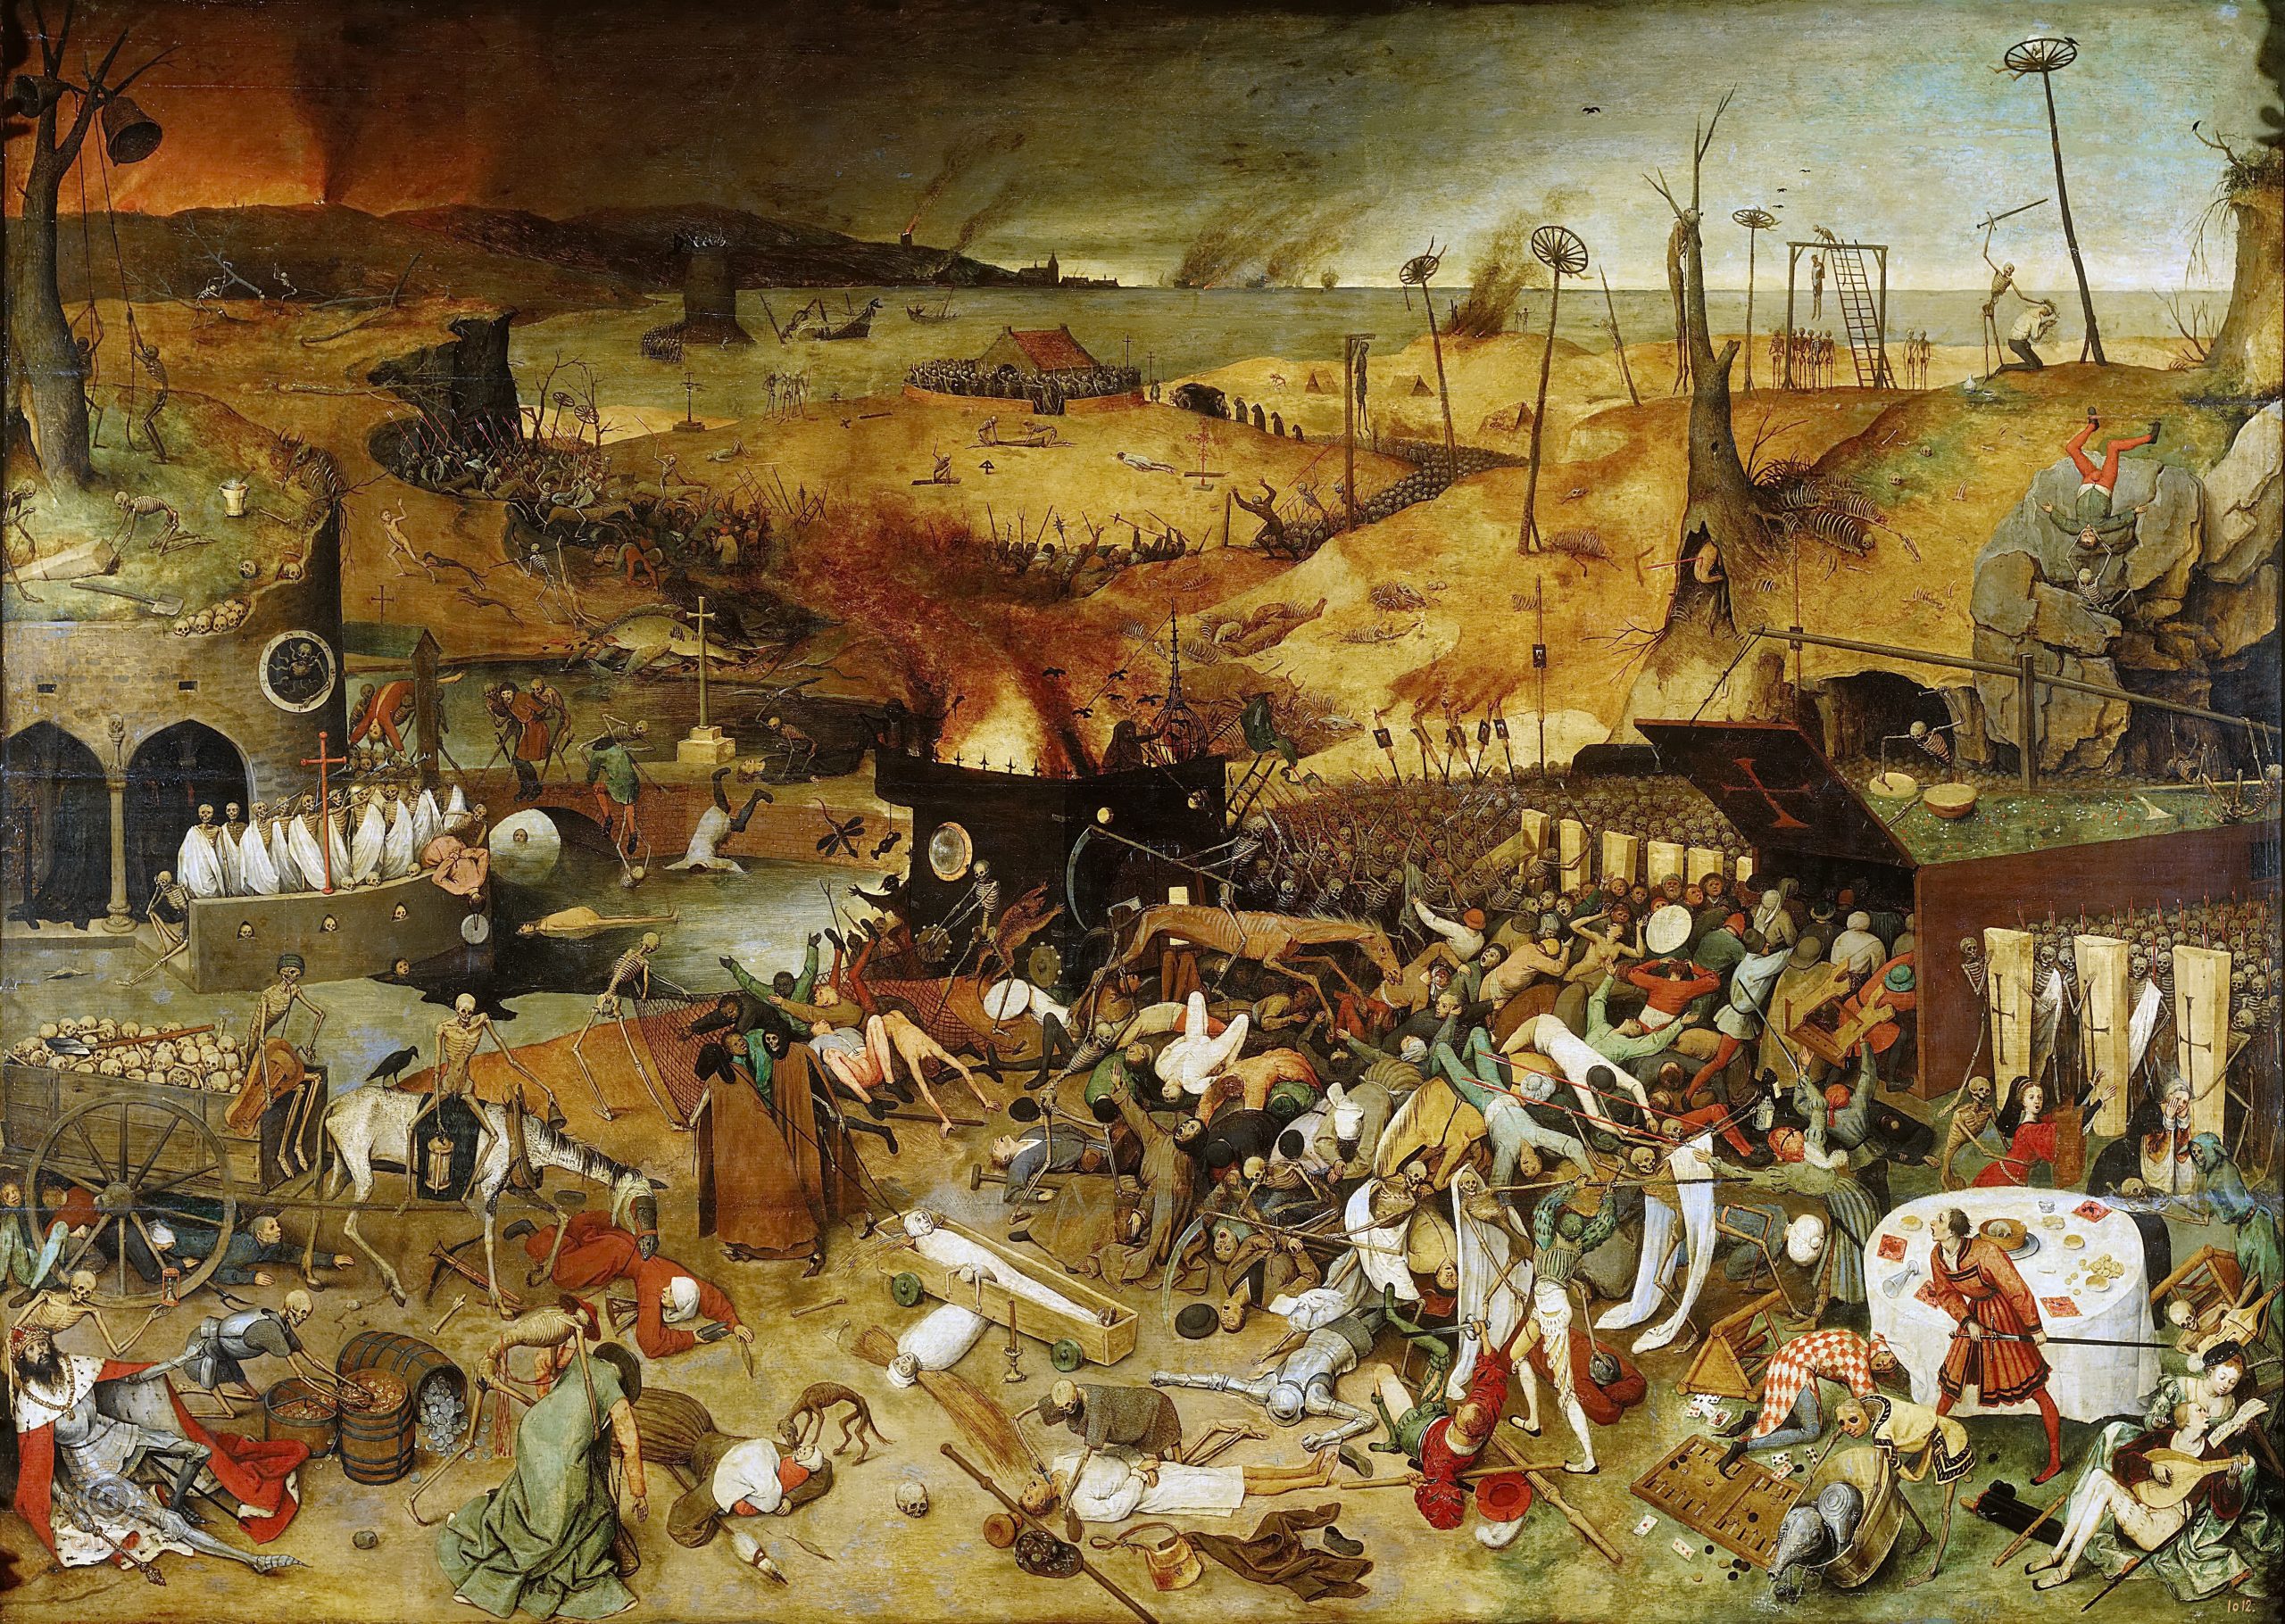 Pintura “O triunfo da morte”, de Peter Breugel, datada de 1562, com um exército de caveiras atacando a cidade, homens e mulheres se defendendo e muitos corpos ao chão.